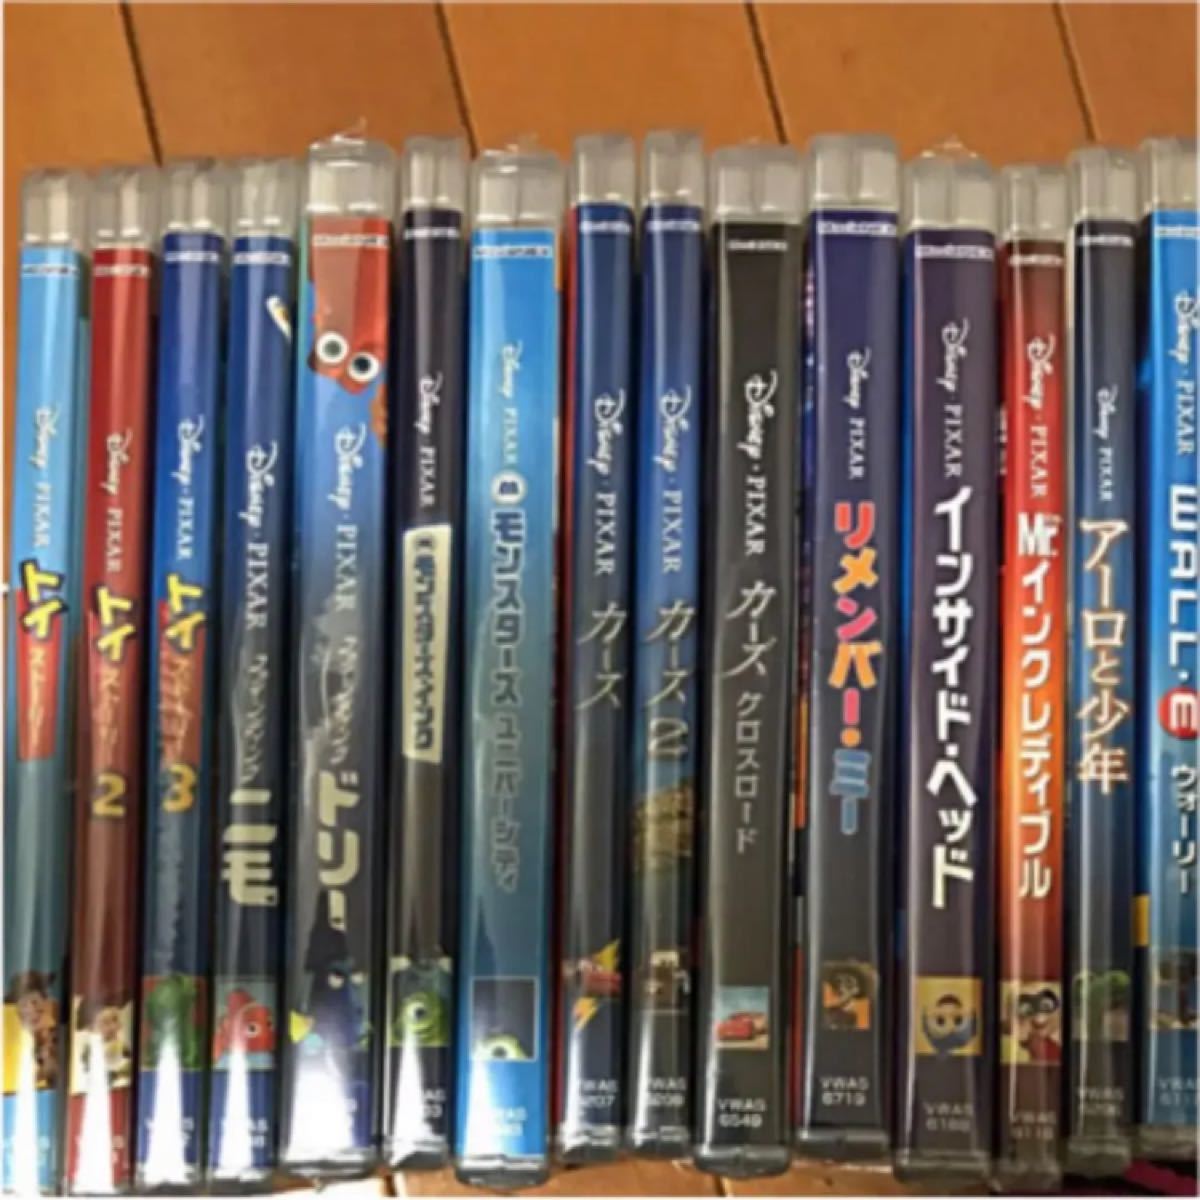 ディズニー映画 DVD+Blu-ray 15点セット Disney